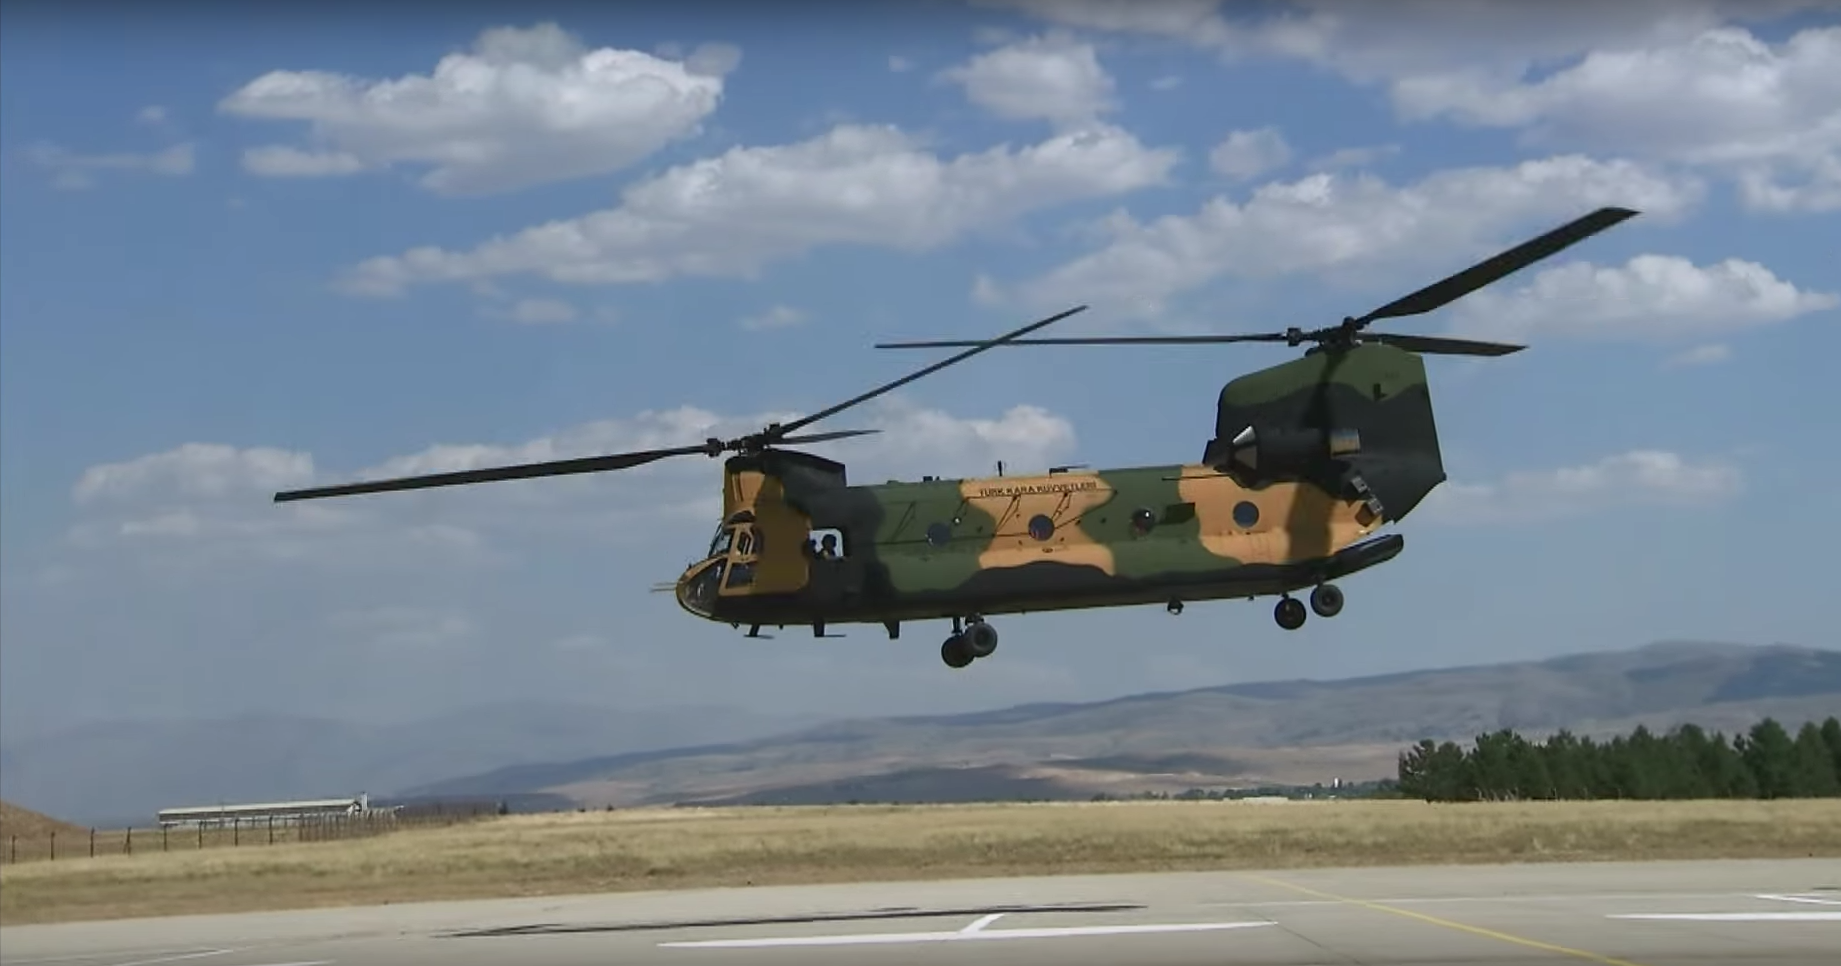 Türk Silahlı Kuvvetleri CH-47 Chinook videosu paylaştı